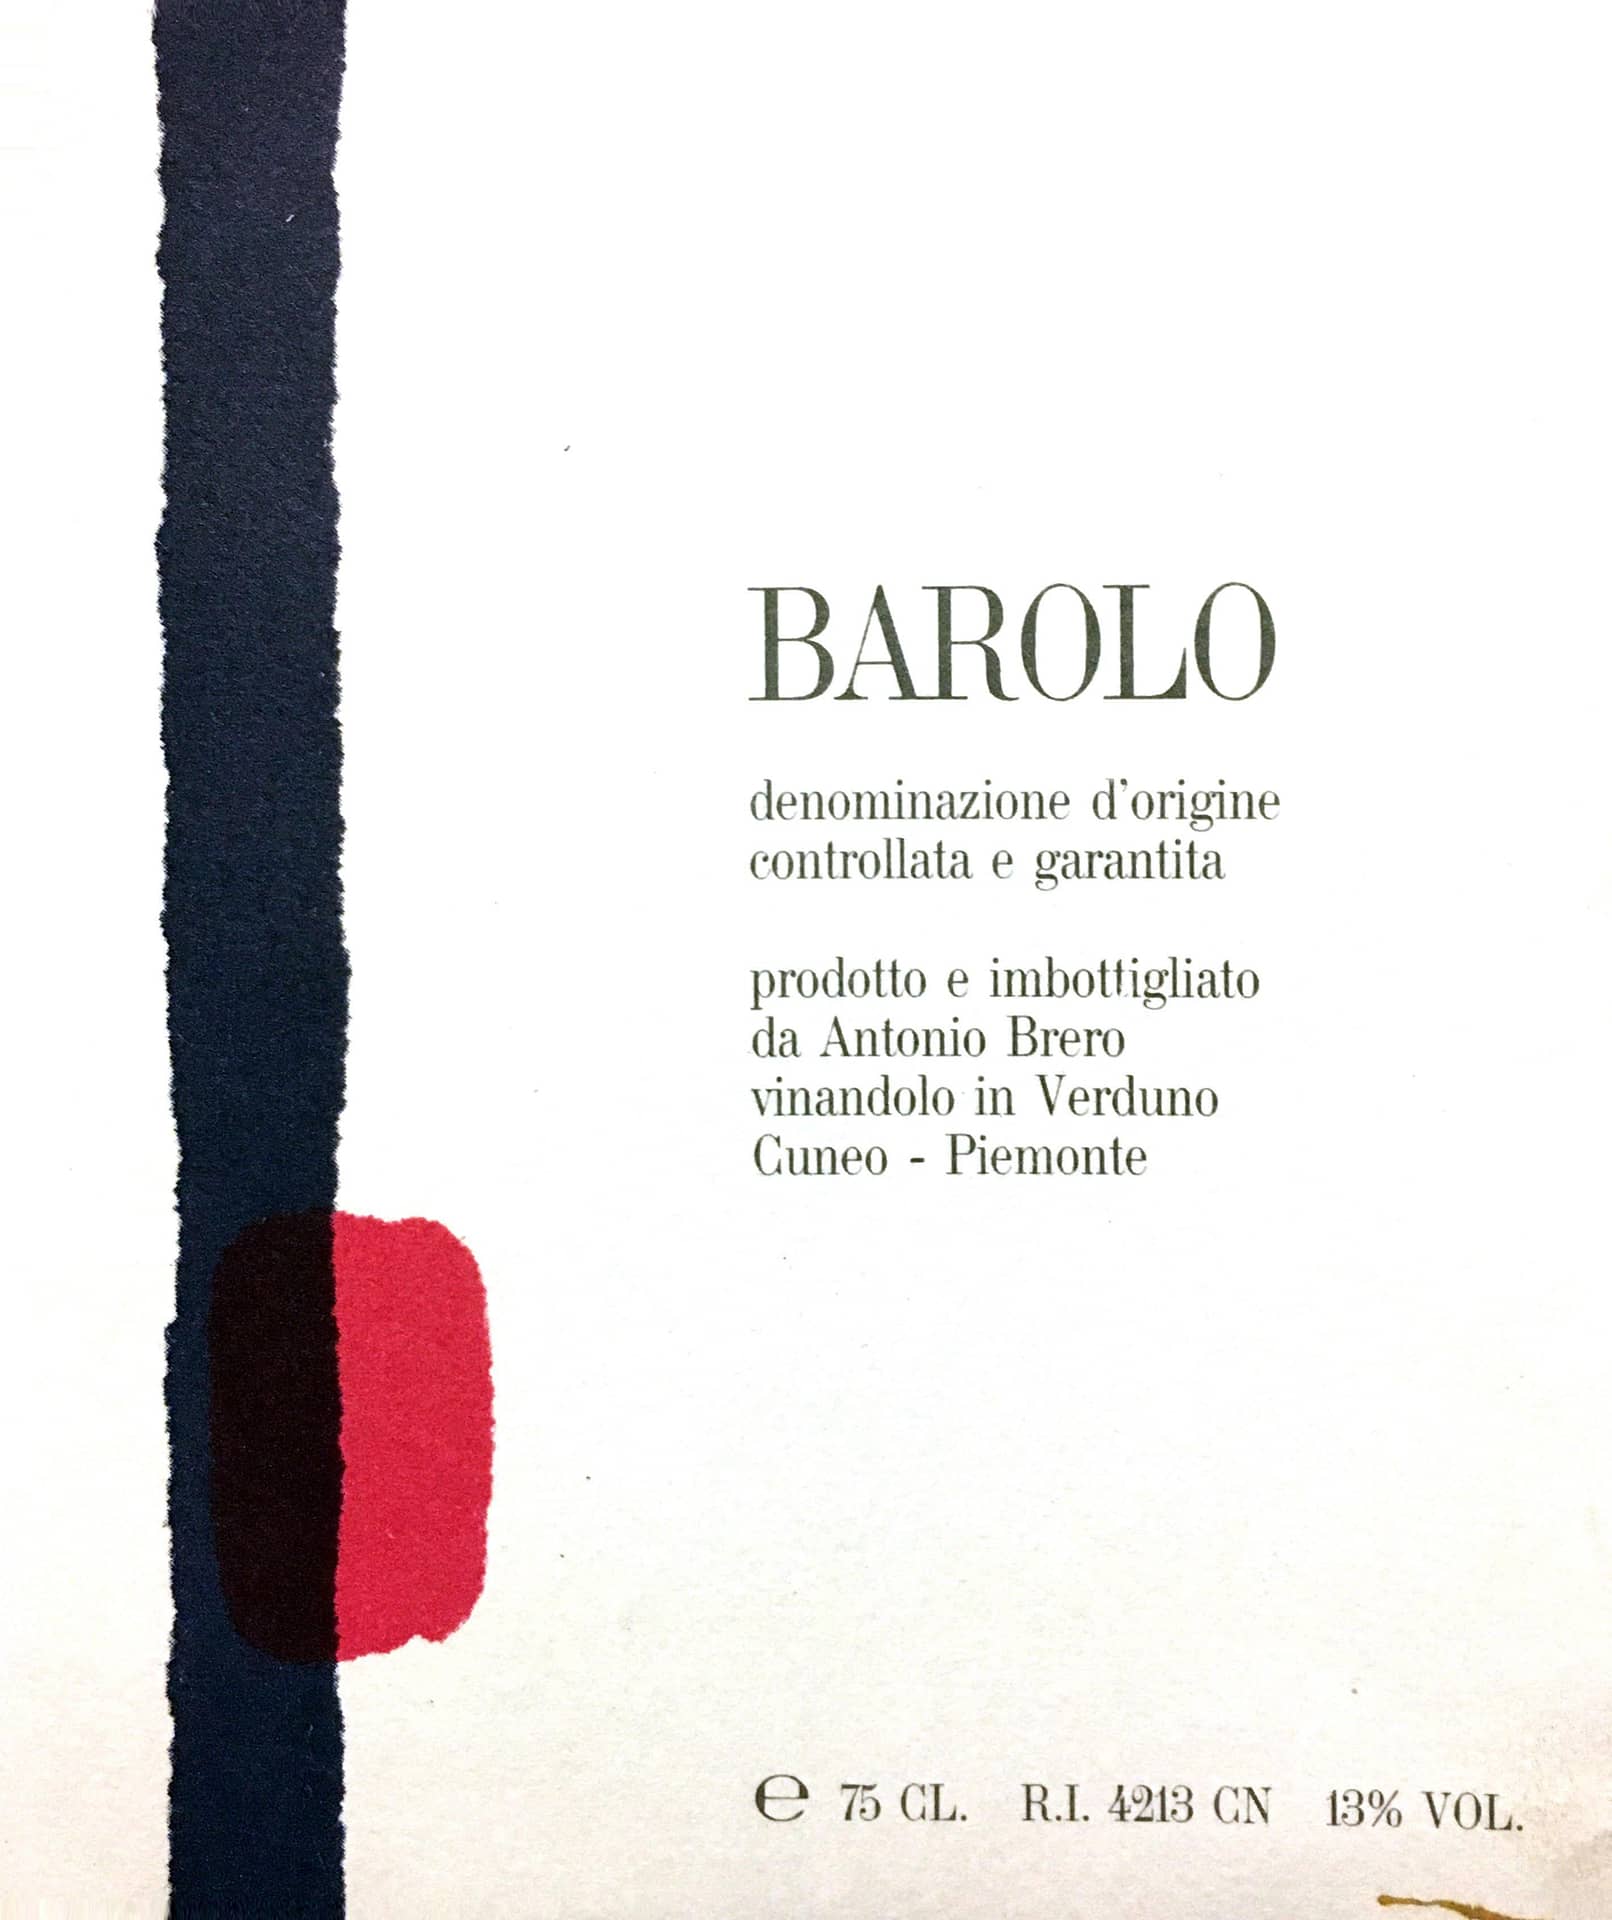 Antonio Brero Barolo 2013